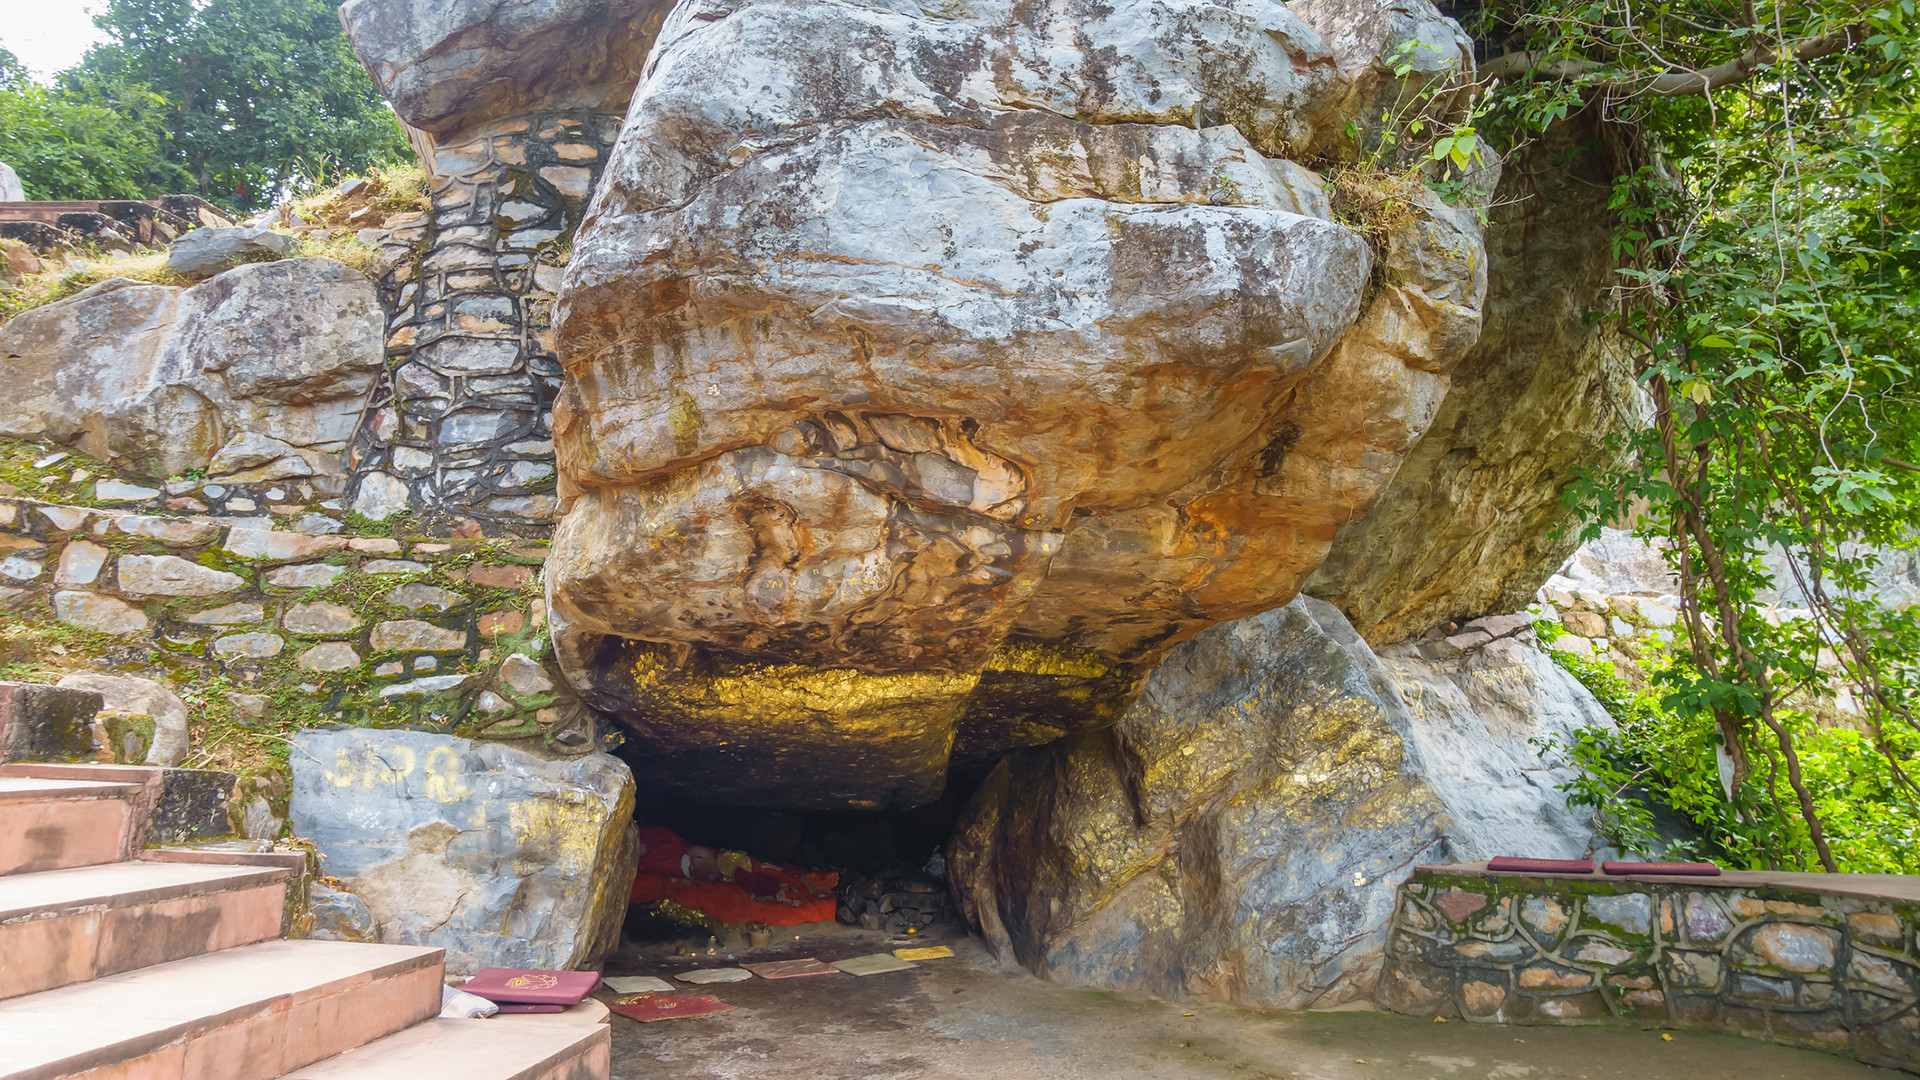 Höhle auf dem Griddhakuta-Berg in der Nähe von Rajgir in Indien.